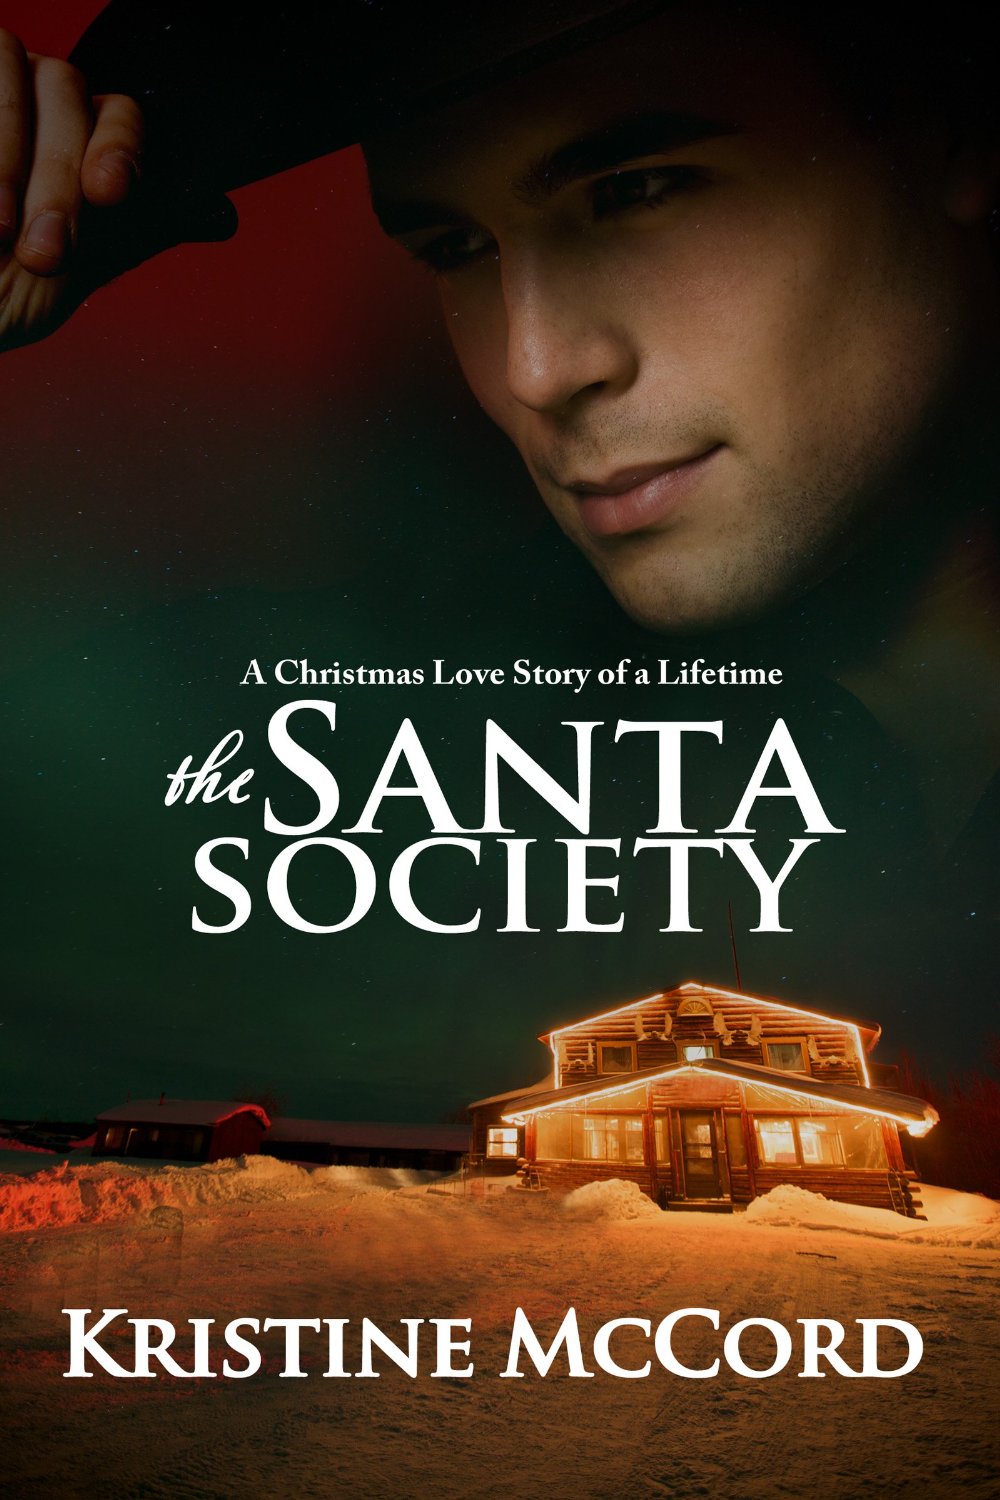 The Santa Society by Kristine McCord